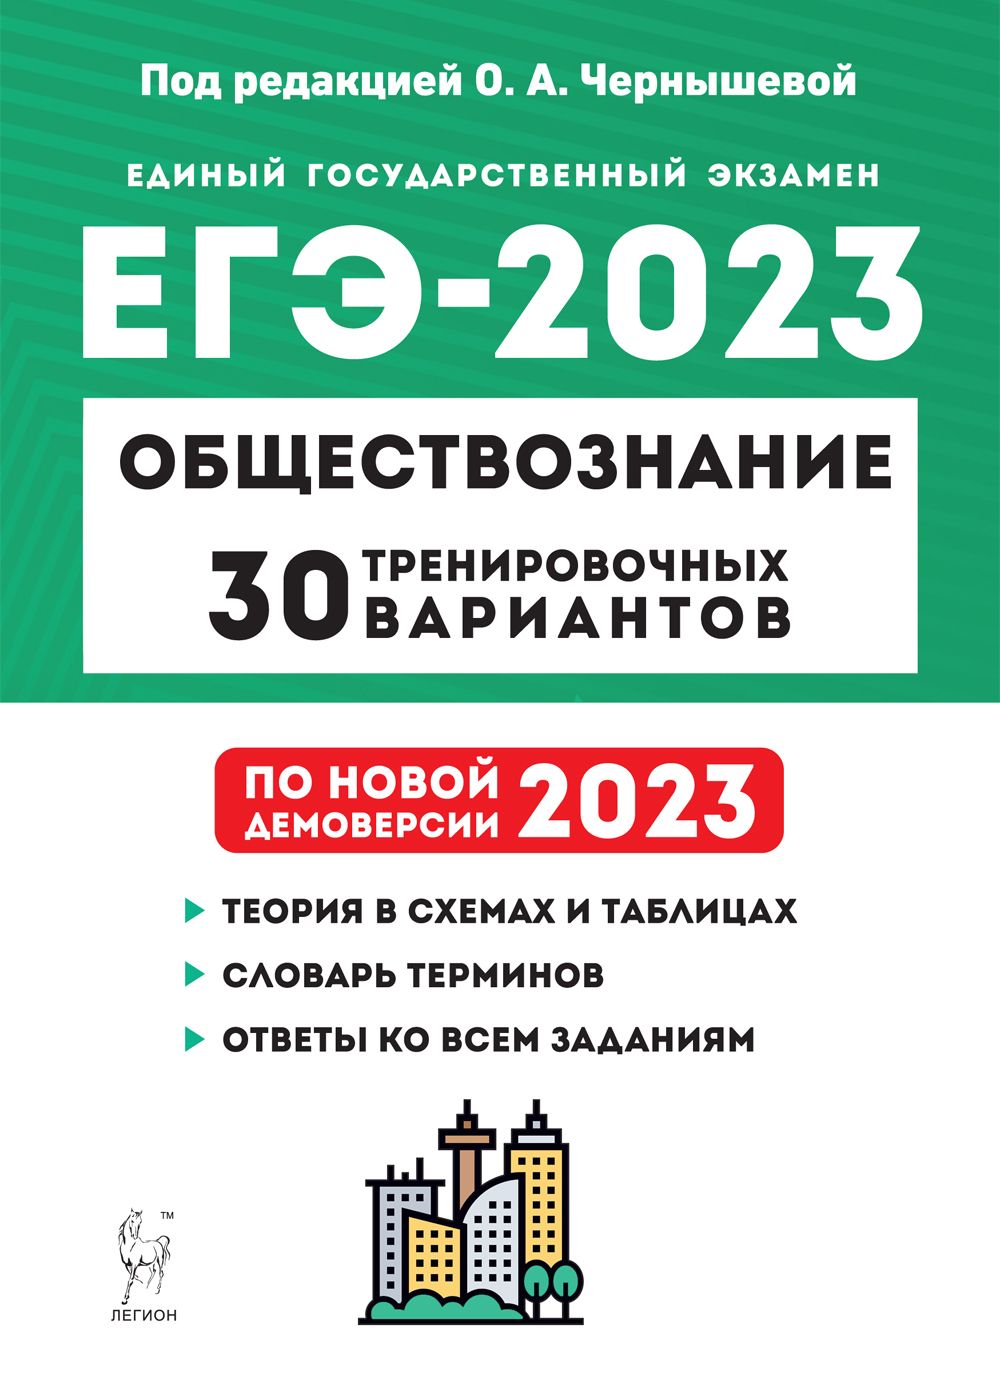 Обществознание. Подготовка к ЕГЭ-2023. 30 тренировочных вариантов по демоверсии 2023 года